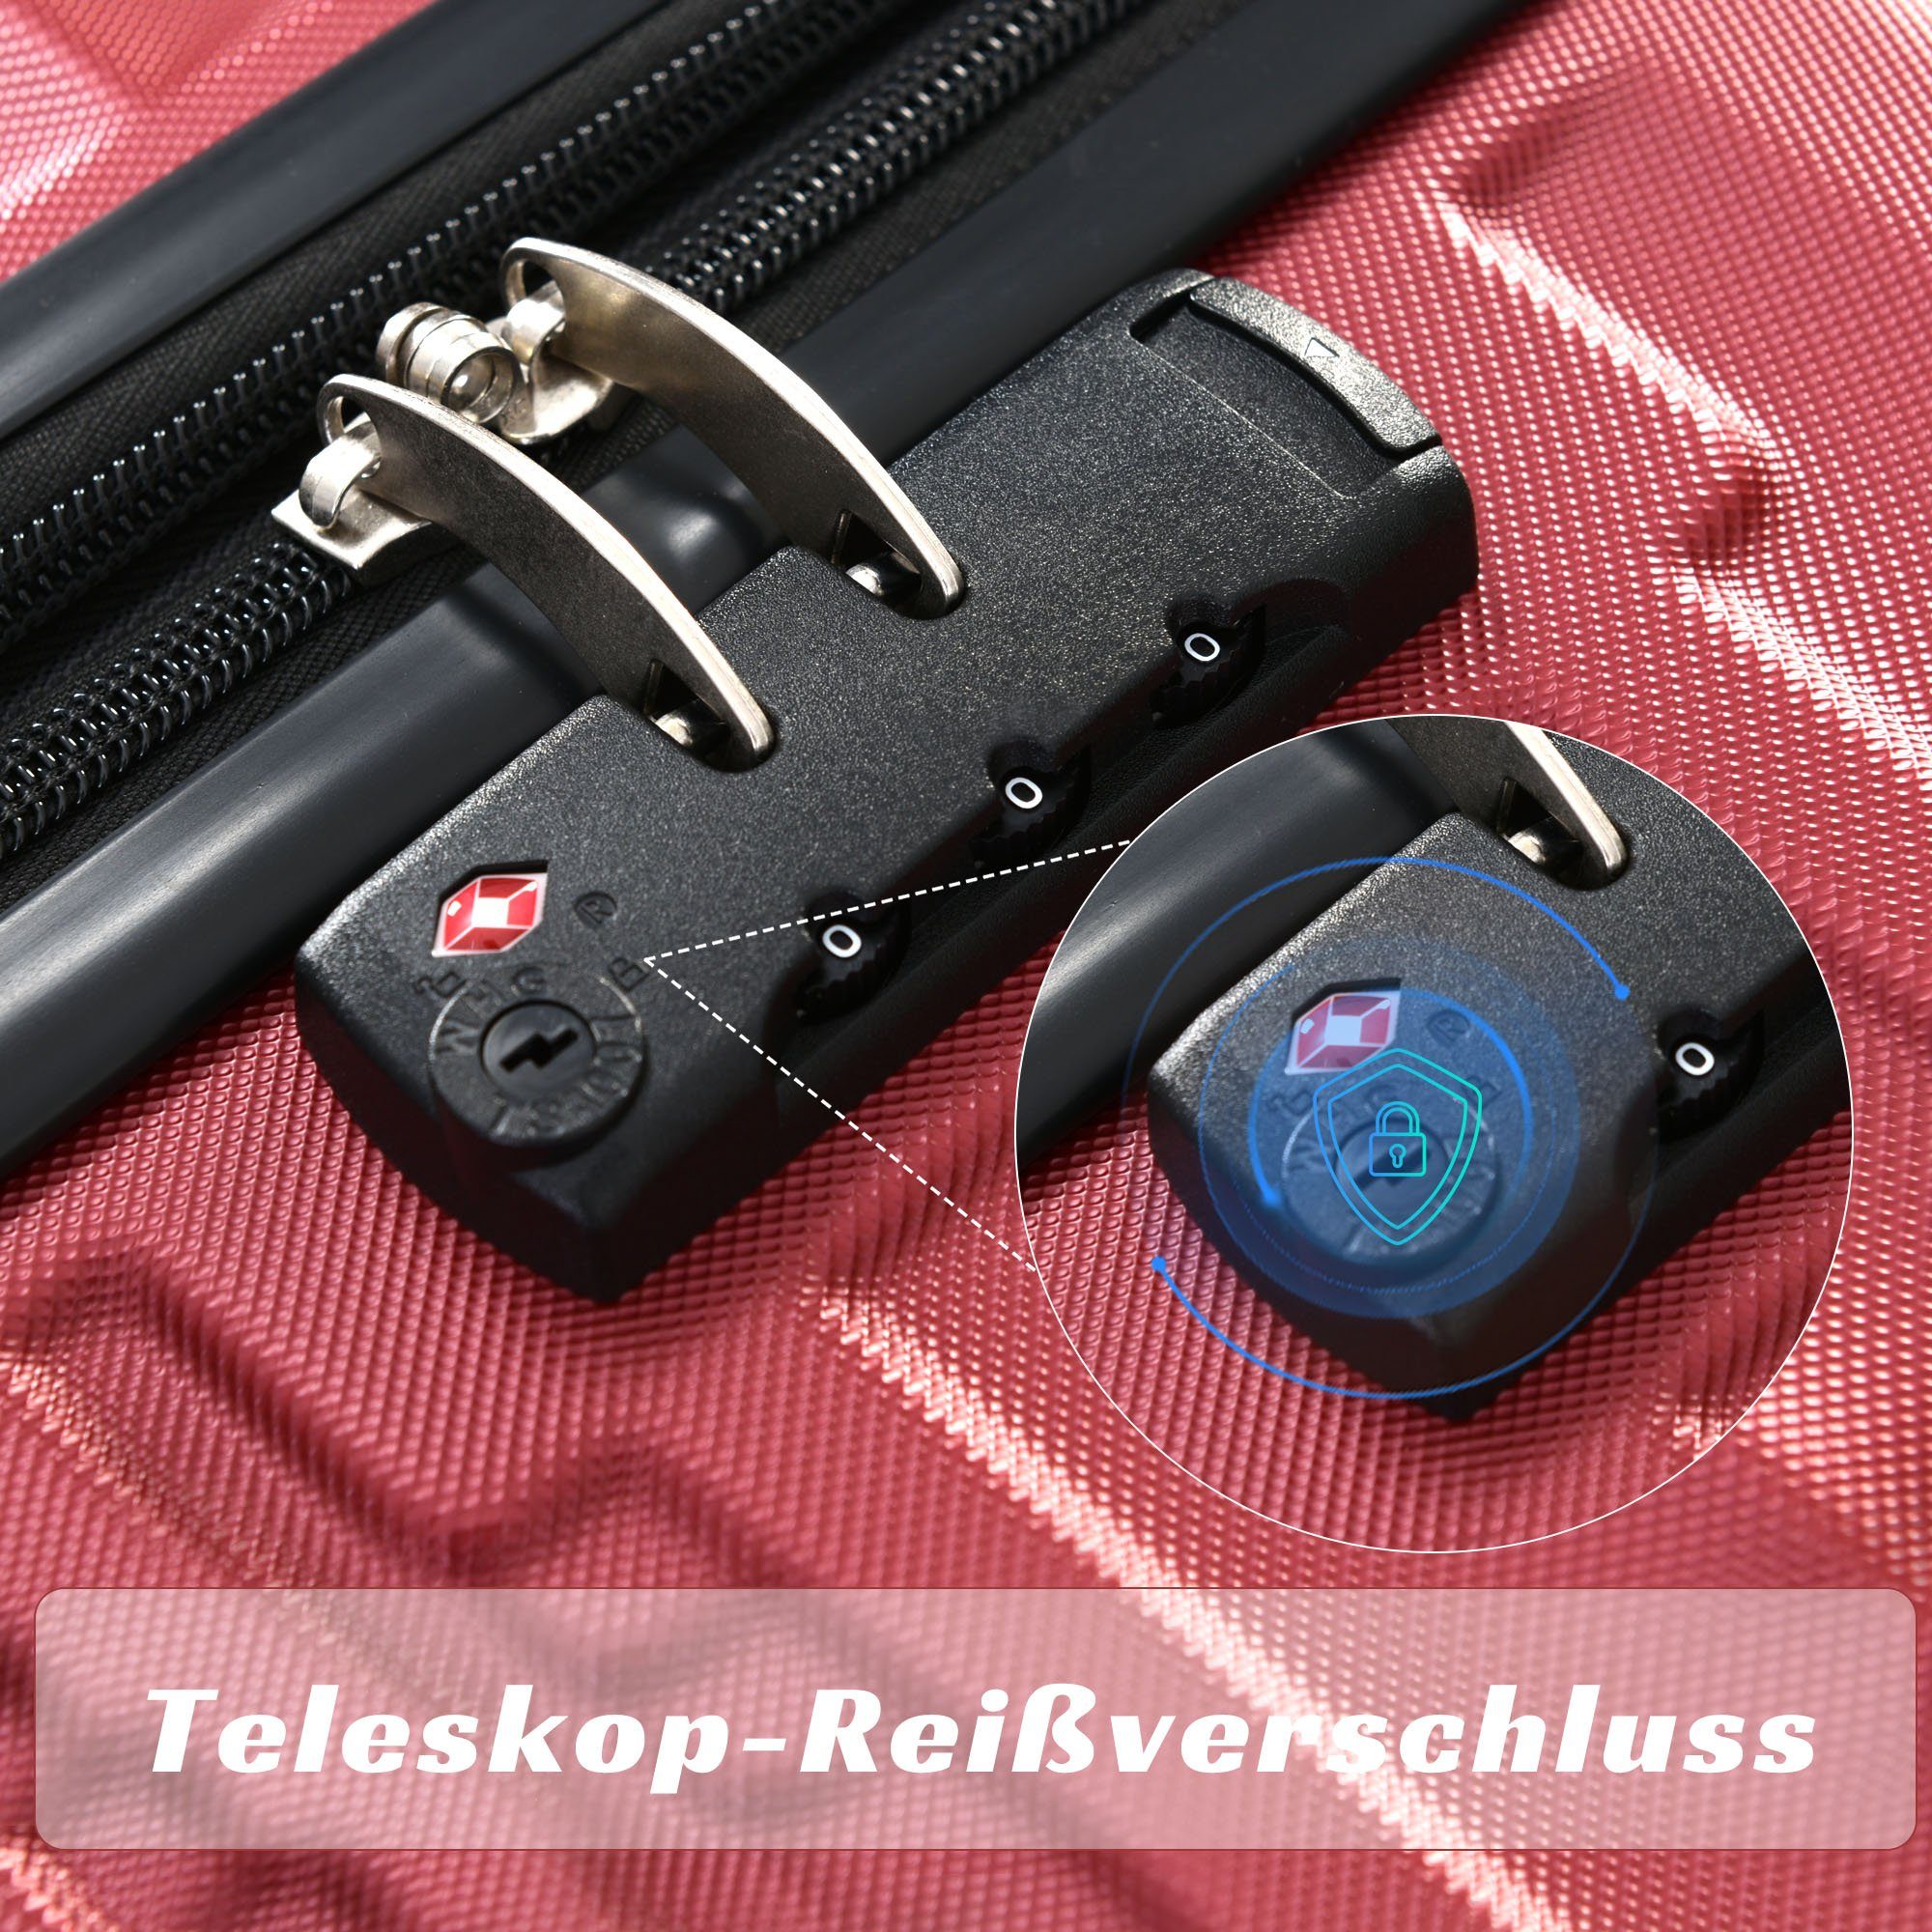 erweiterbare ABS-Gepäck, Handgepäckkoffer OKWISH Rot Räder, 4 Rollen 4 Hochwertiges TSA-Schloss, Kapazität,